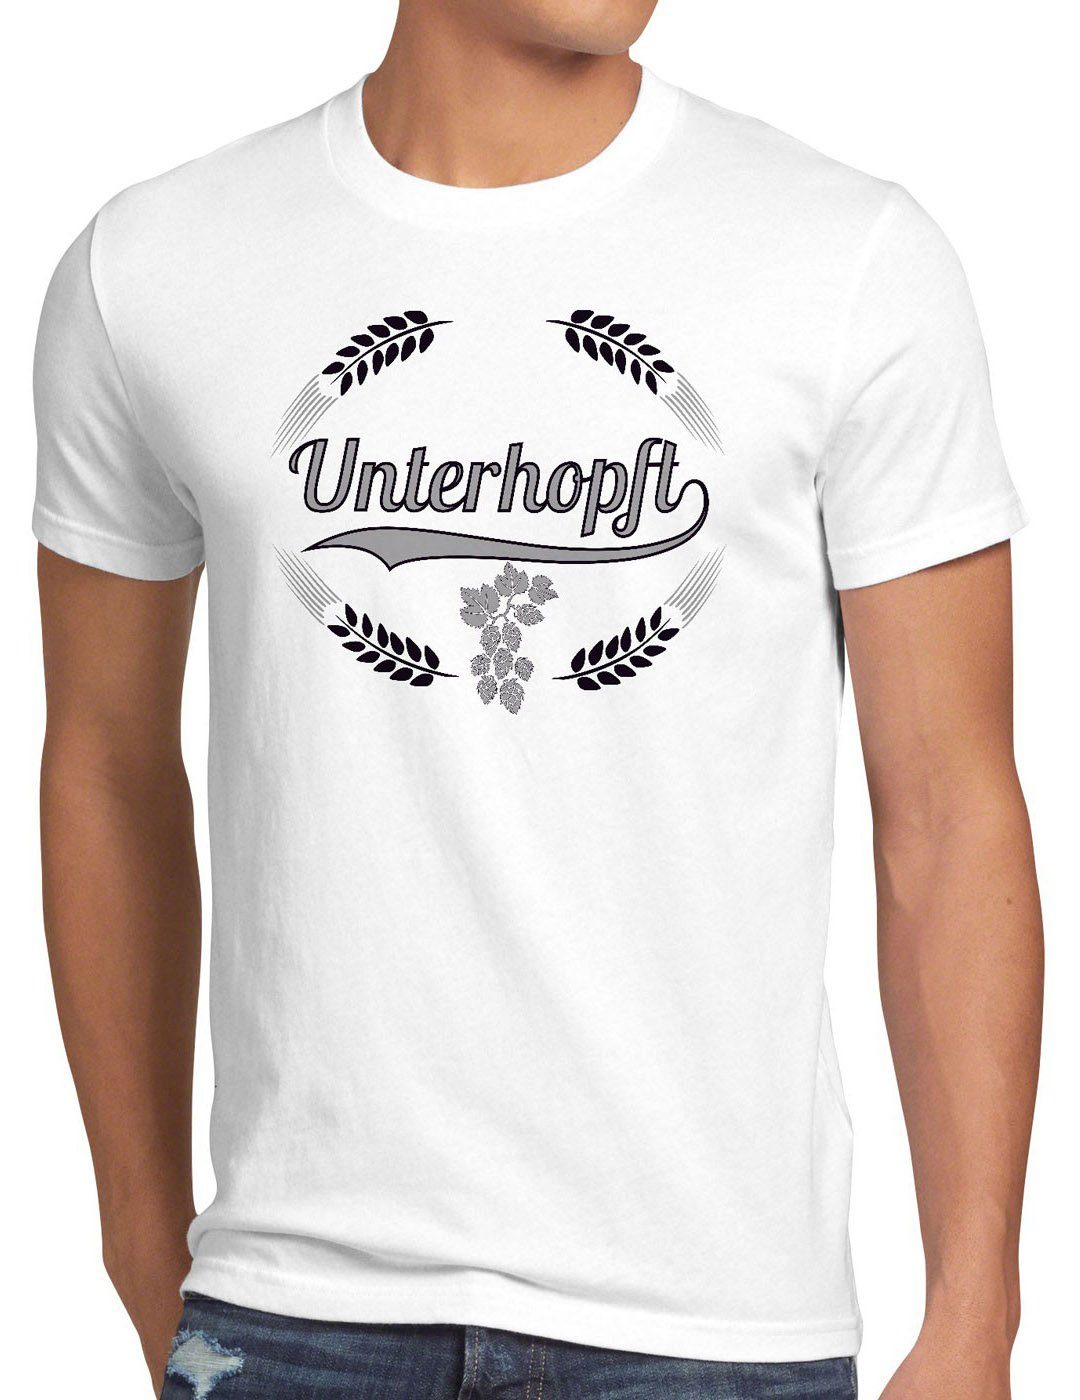 Kult Herren Print-Shirt Fun Unterhopft Hopfen style3 Fest Malz Shirt weiß Funshirt Bier Spruch T-Shirt